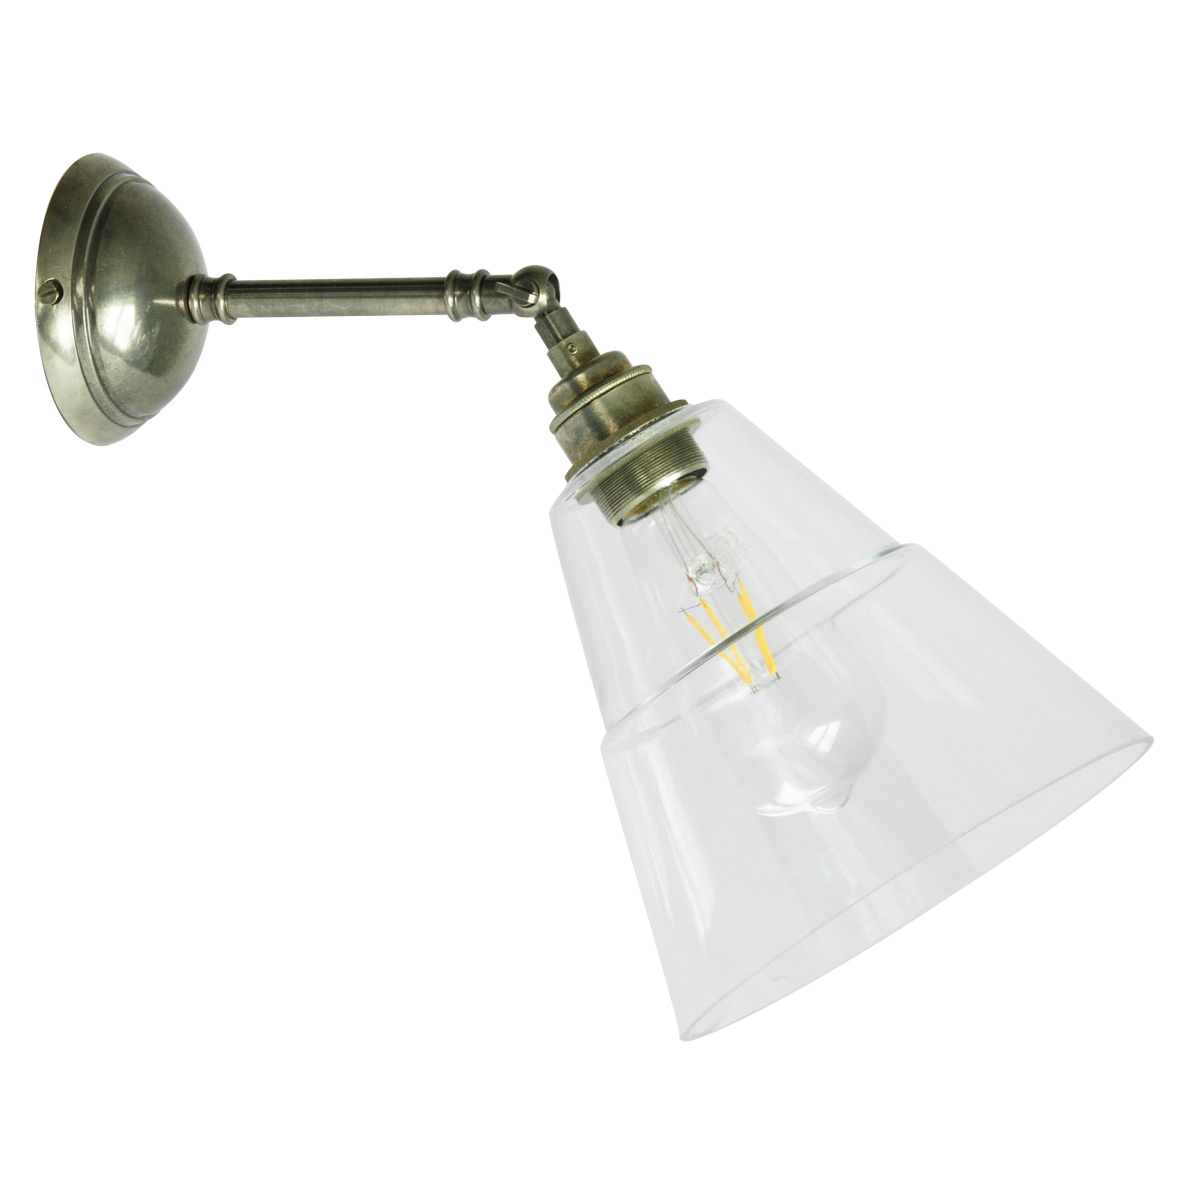 Schlichte kleine Wandleuchte mit abgestuftem Glasschirm: Gelenk-Wandlampe mit Glaskegel, hier Messing alt-silbern patiniert